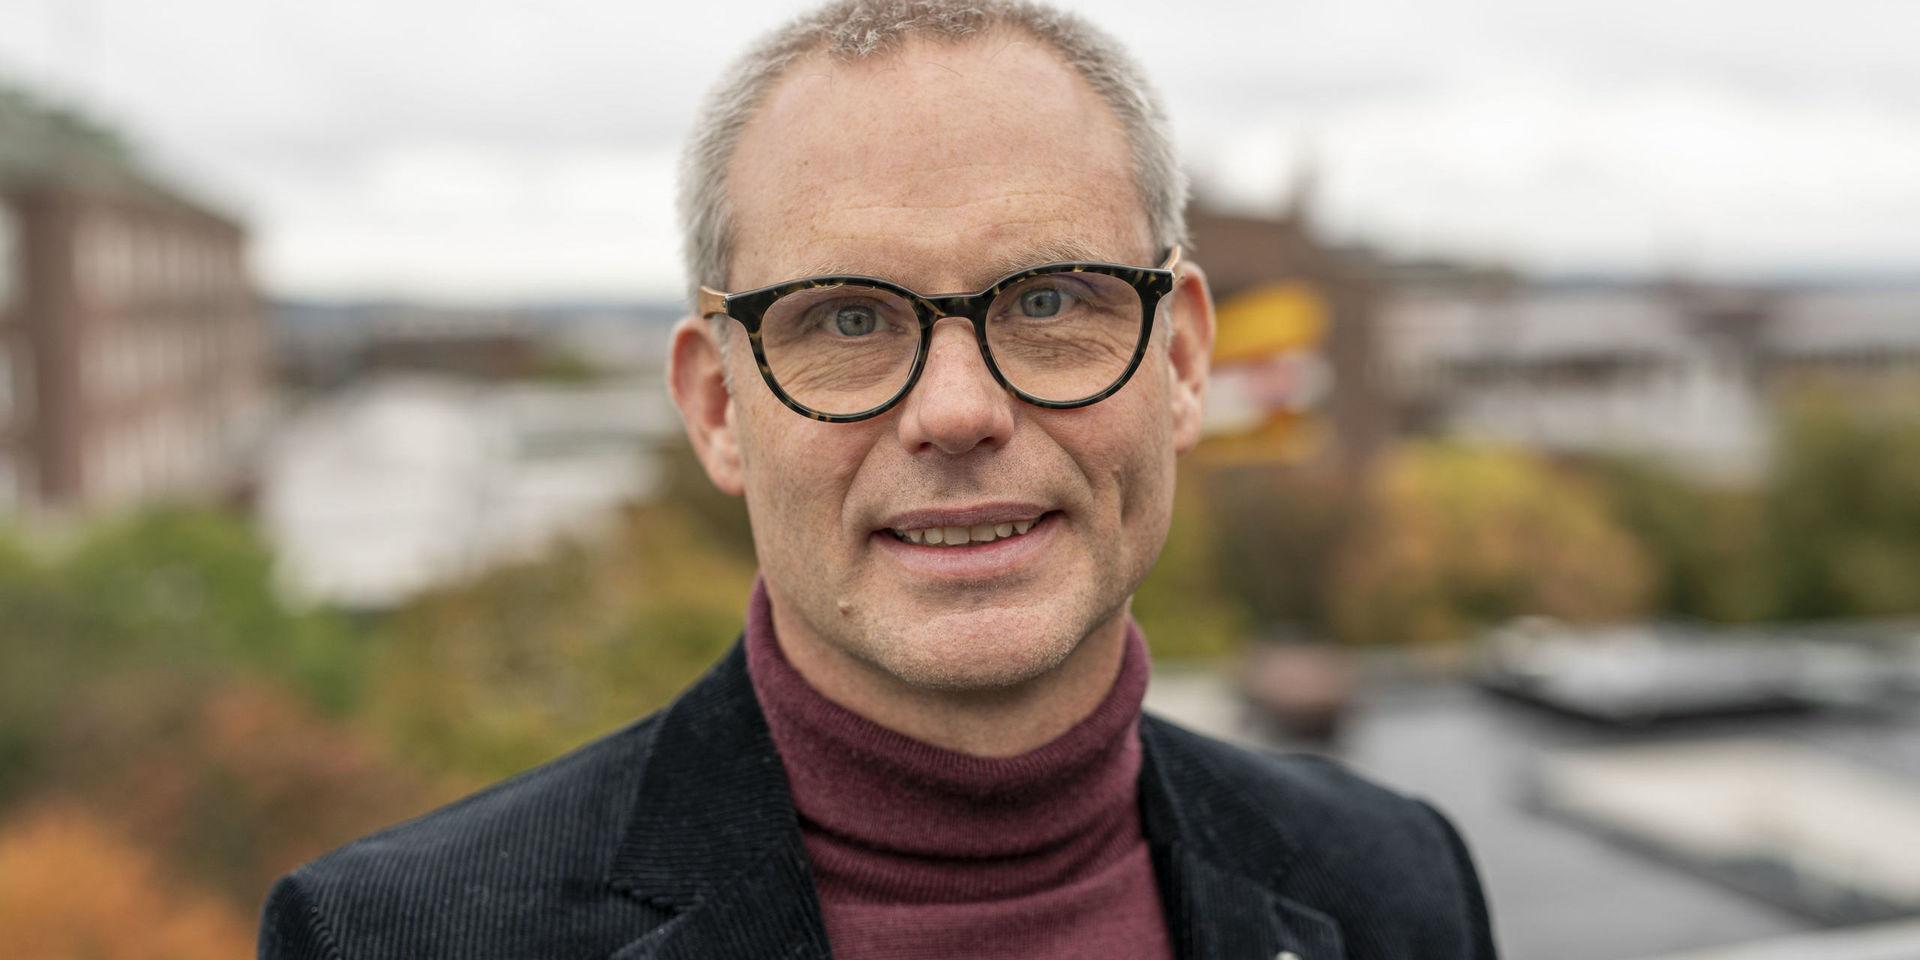 Henrik Thunman är professor i termokemisk omvandling vid Chalmers tekniska högskola i Göteborg.